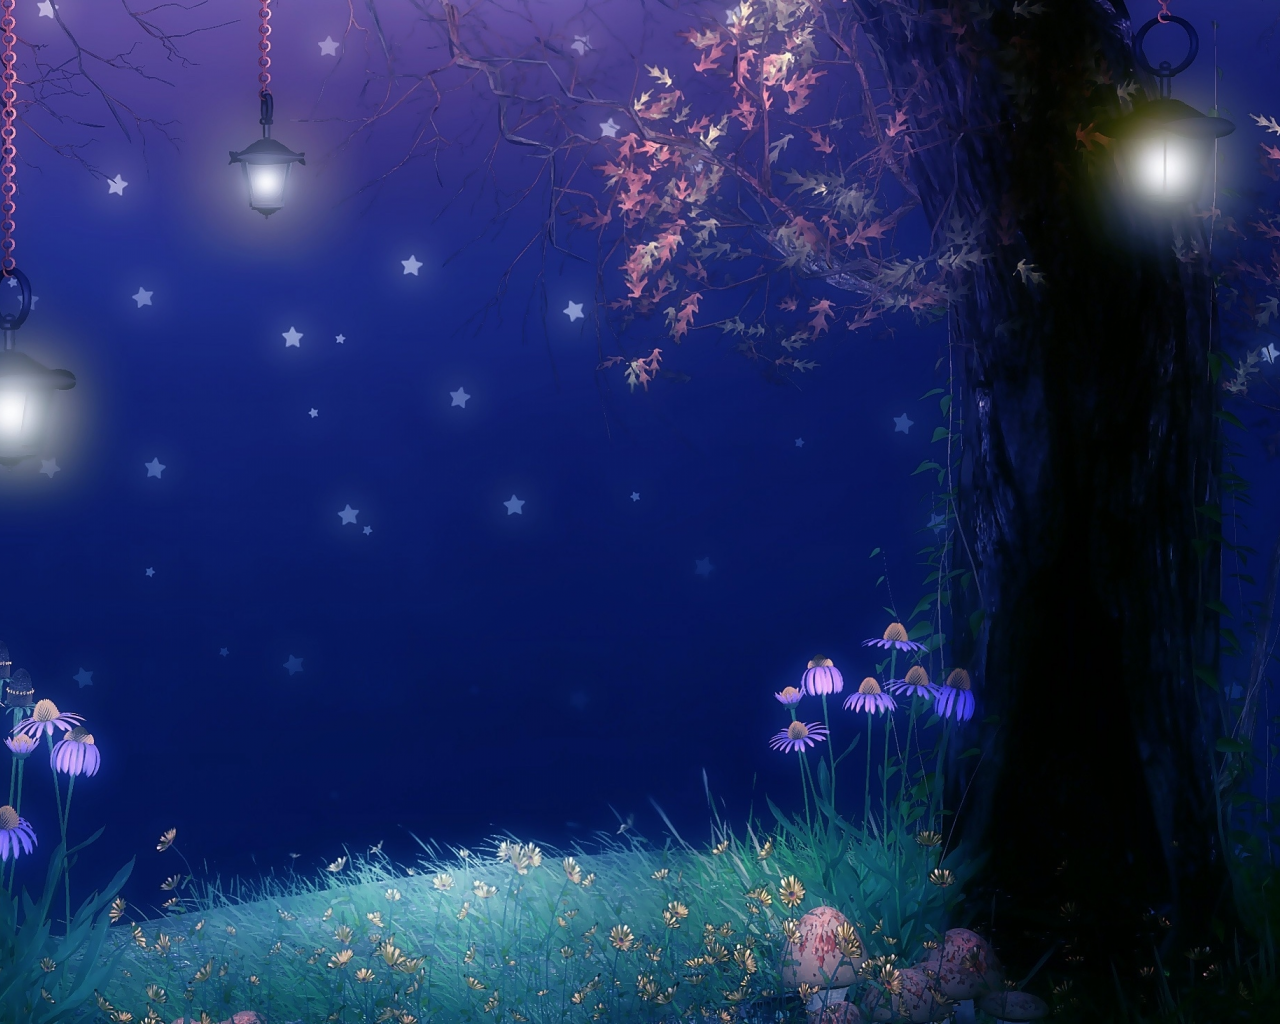 дерево, фонари, листва, цветы, звёзды, грибы, ночь